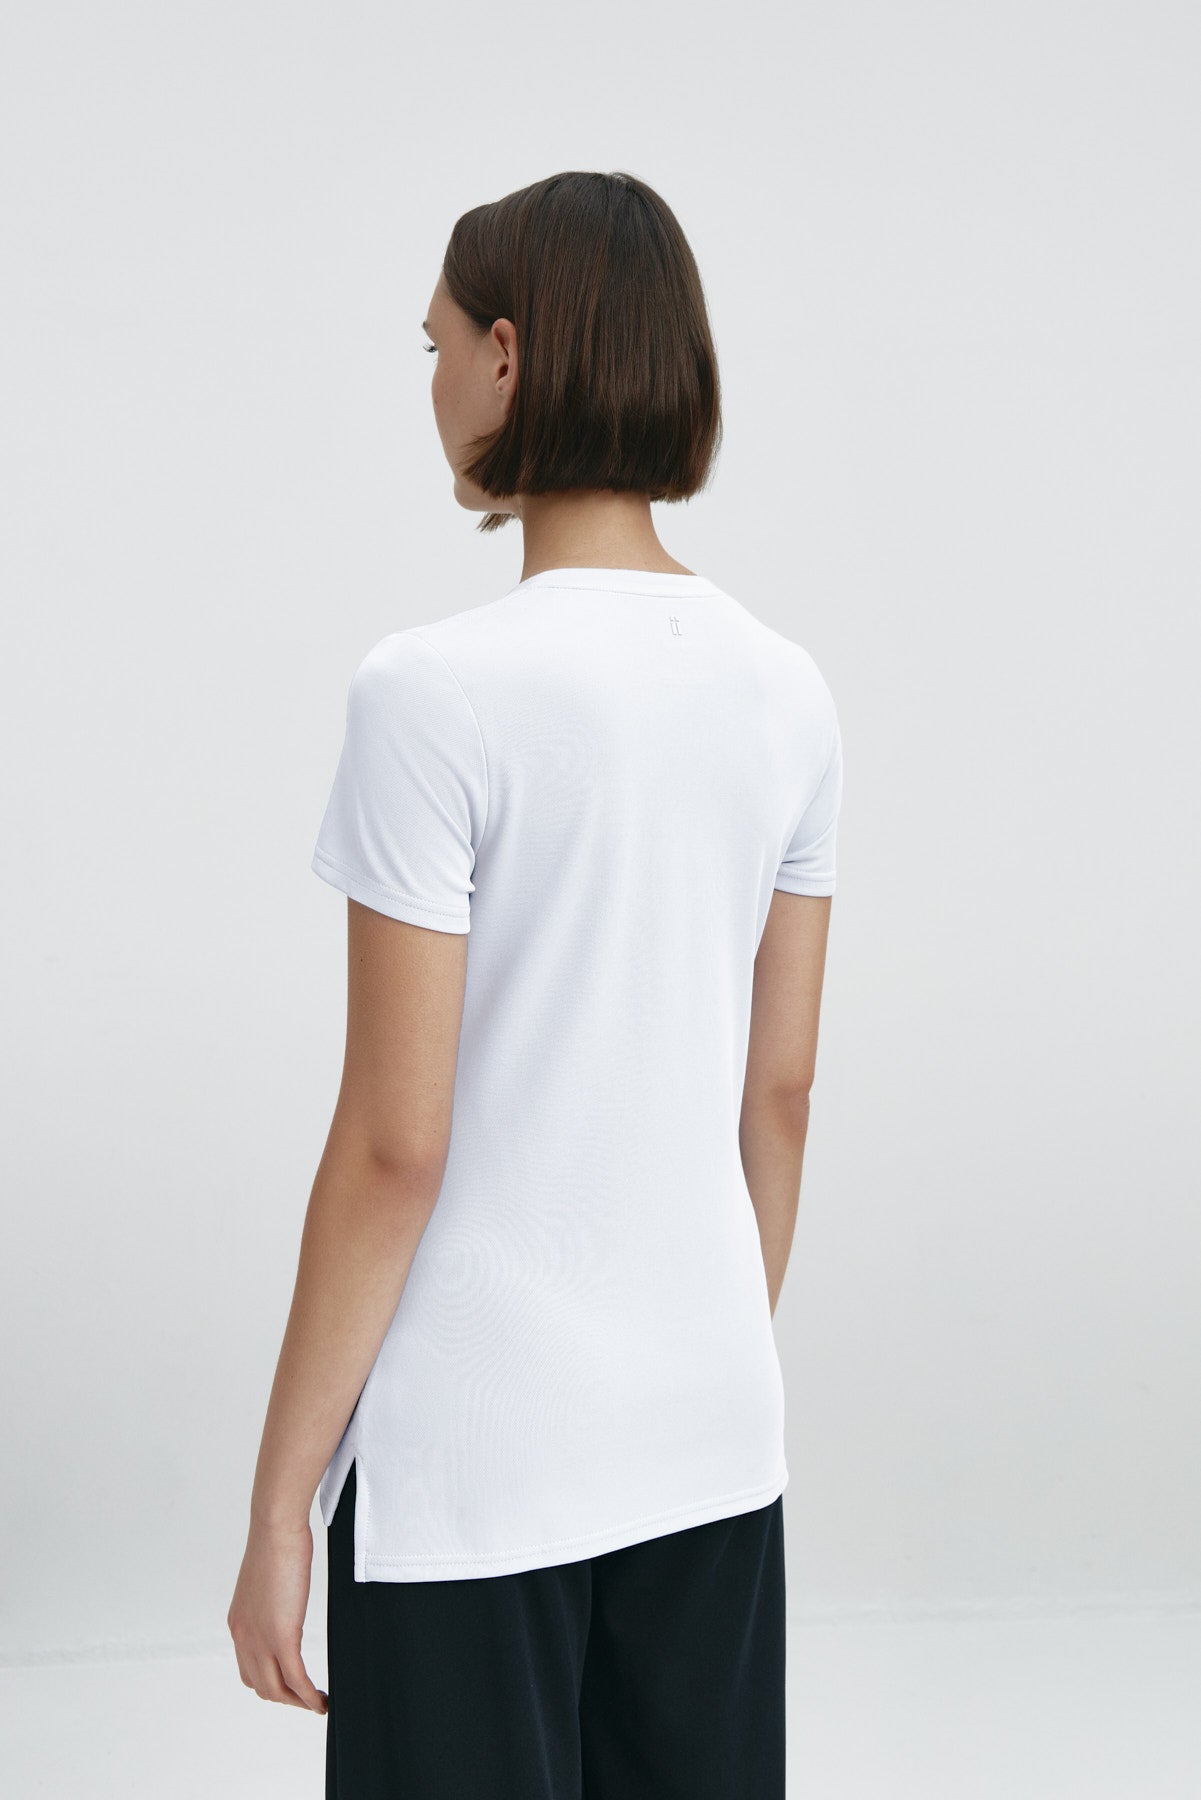 Top para mujer sin mangas con escote pico color blanco, básico. Foto espalda